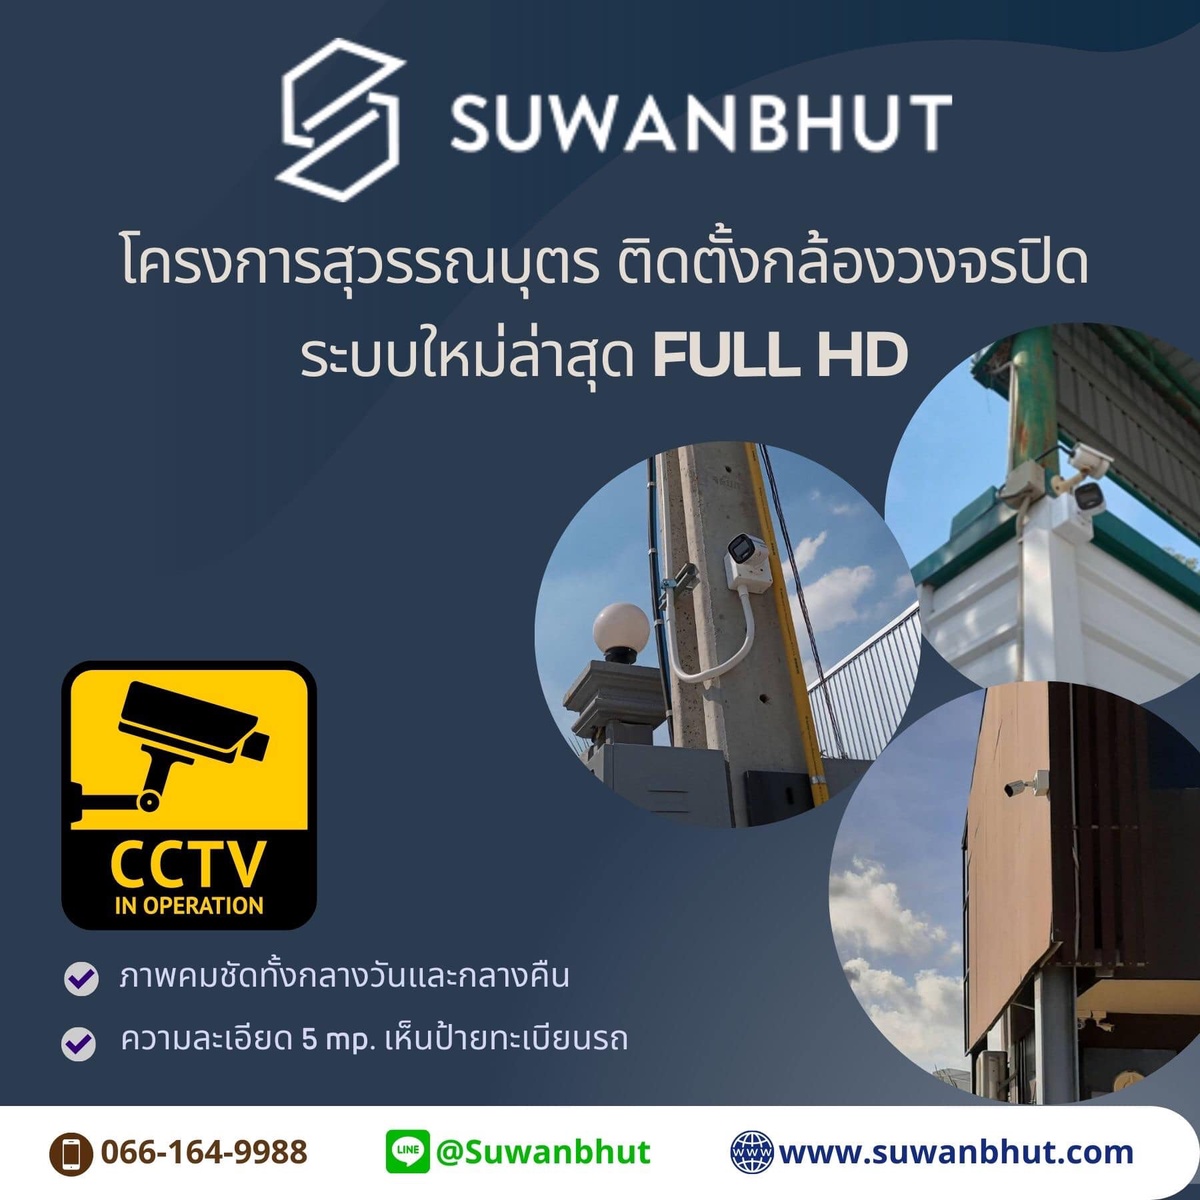 โครงการสุวรรณบุตร (Suwanbhut) นำระบบกล้องวงจรปิดใหม่ล่าสุด สร้างความปลอดภัยให้กับลูกค้าภายในโครงการฯ